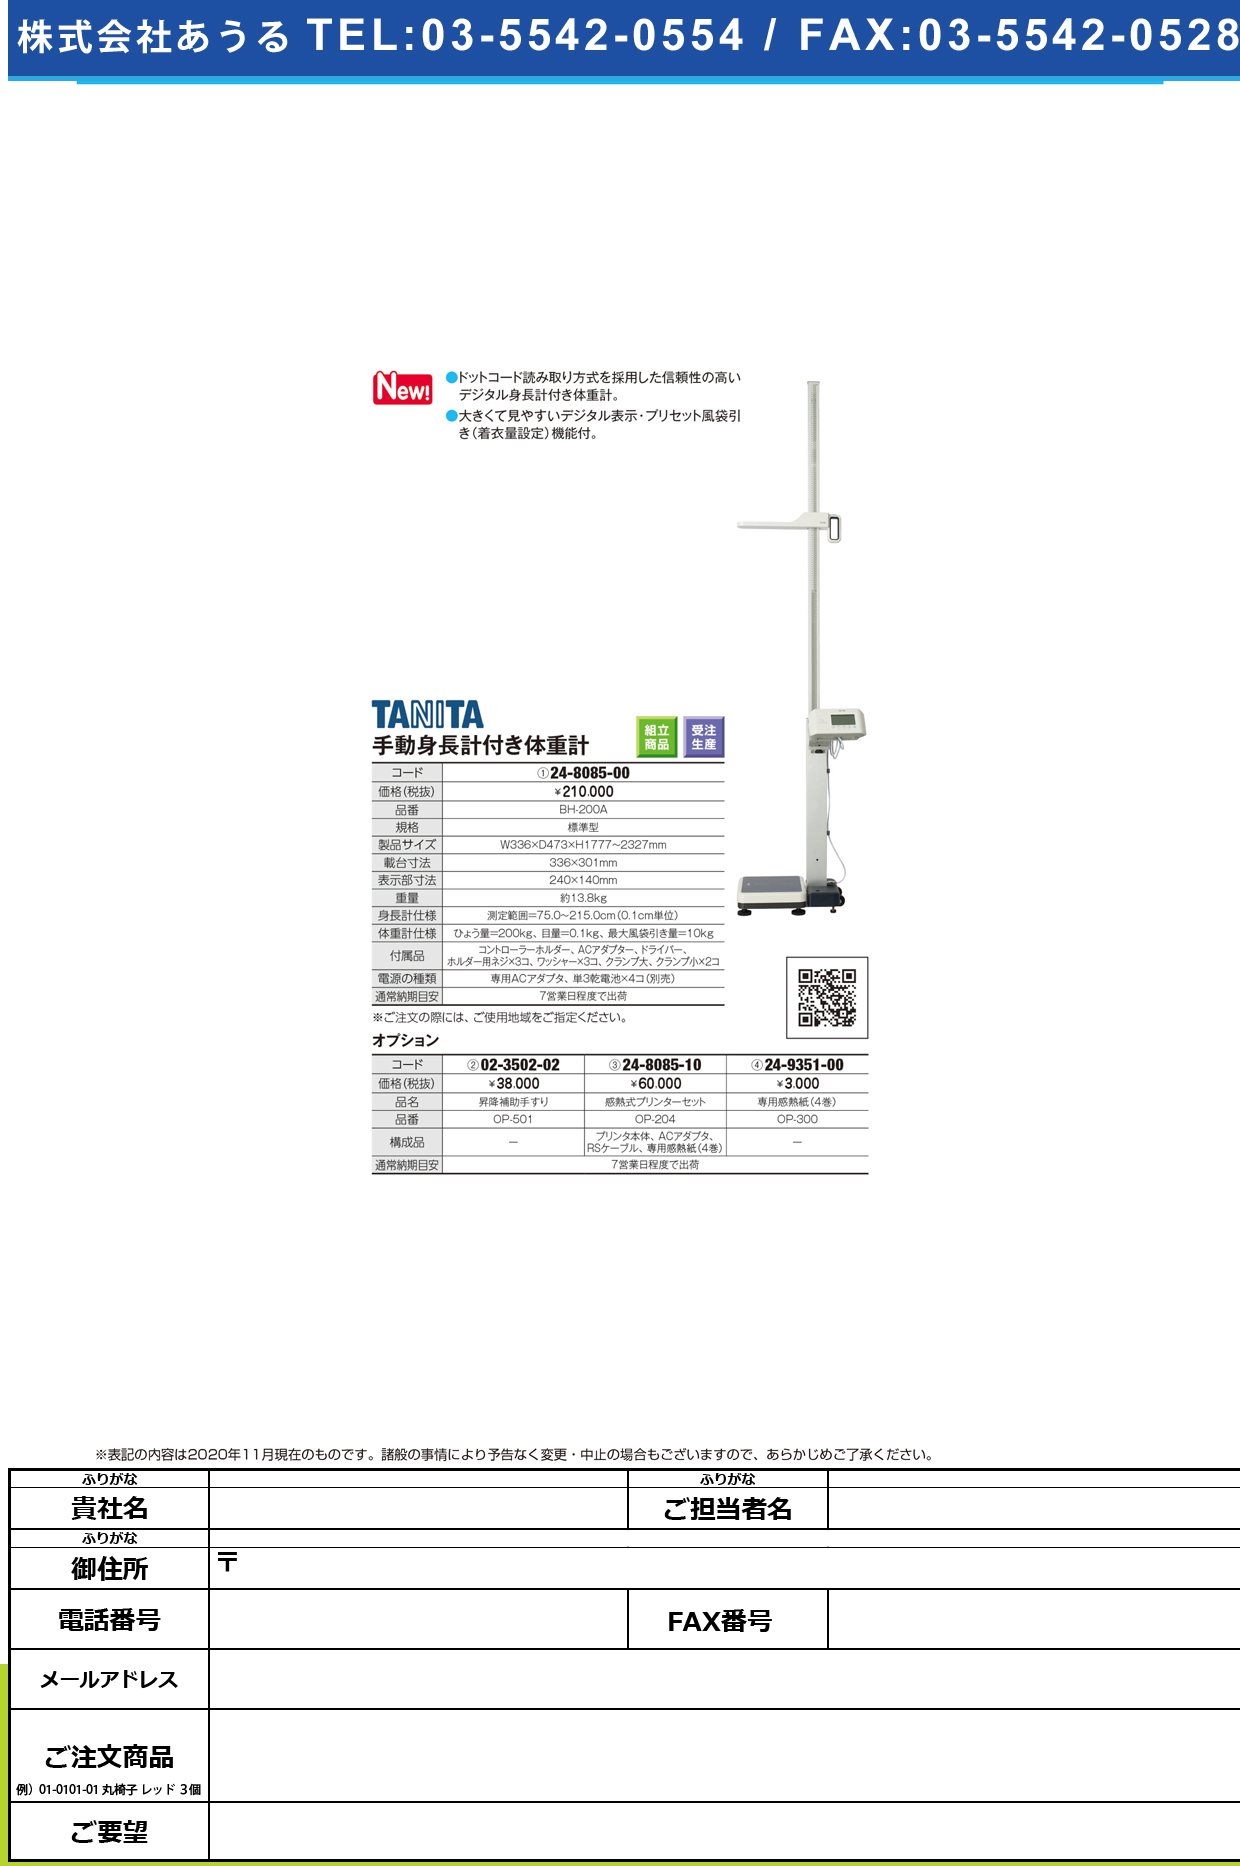 専用感熱式プリンタセット OP-204OP-204(24-8085-10)【タニタ】(販売単位:1)